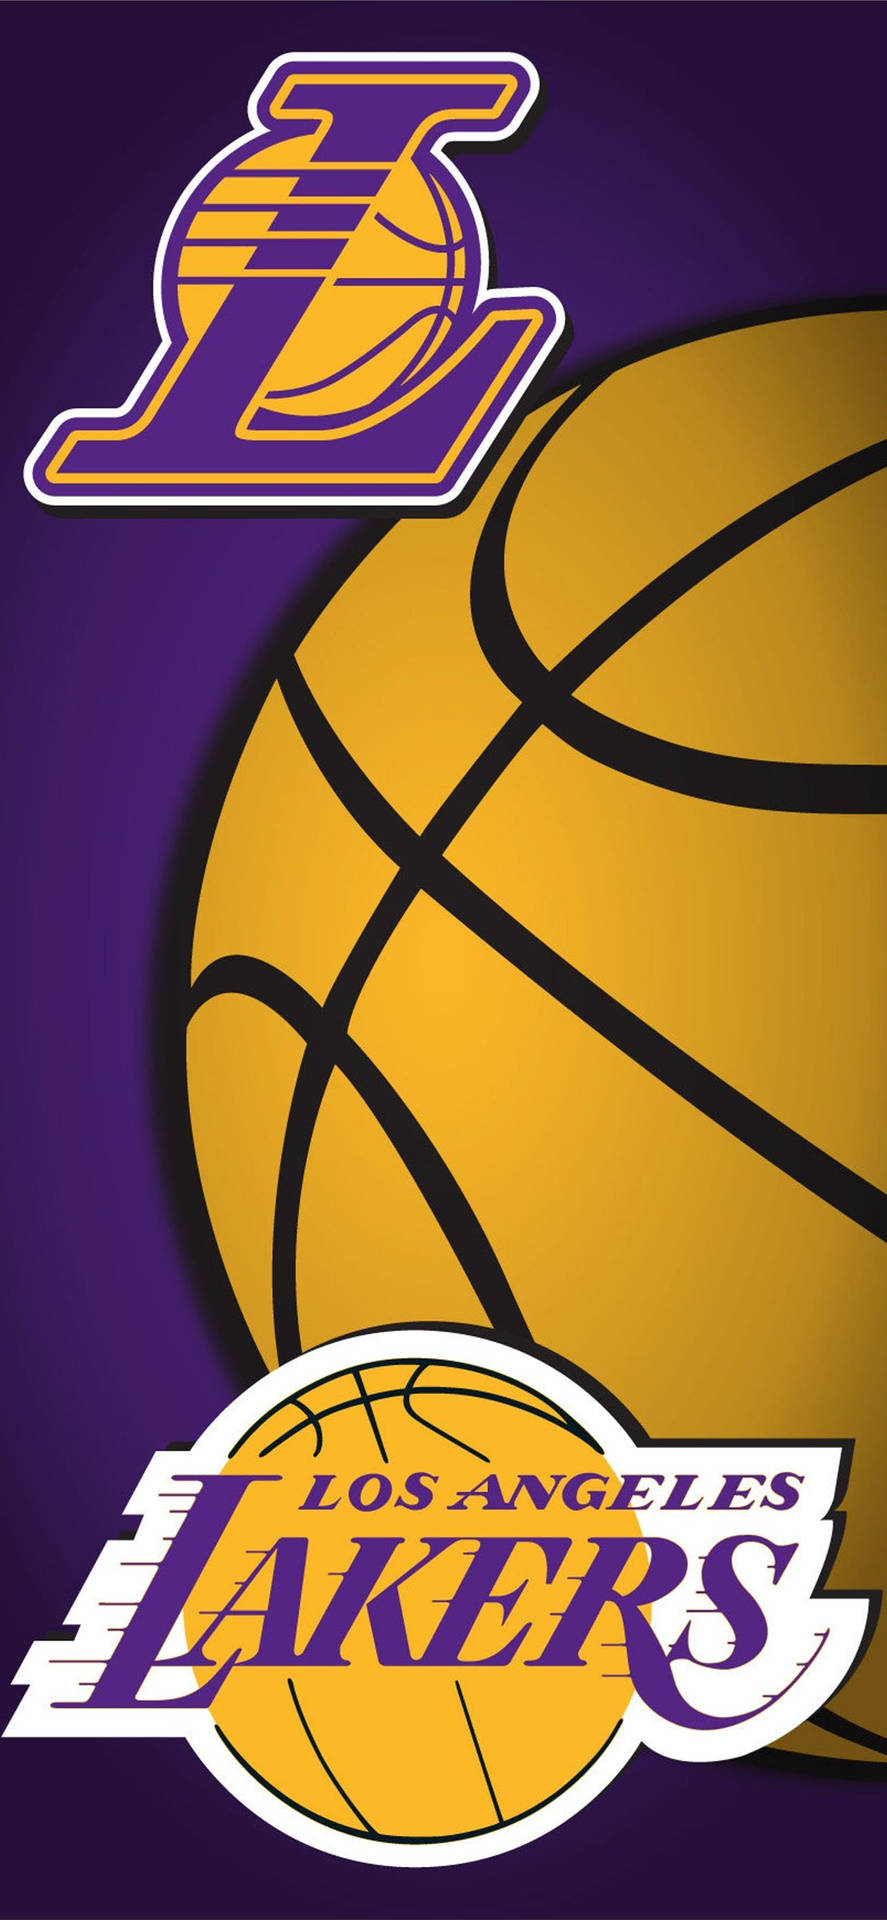 Zeigensie Ihre Unterstützung Für Die Lakers Mit Ihrem Iphone! Wallpaper